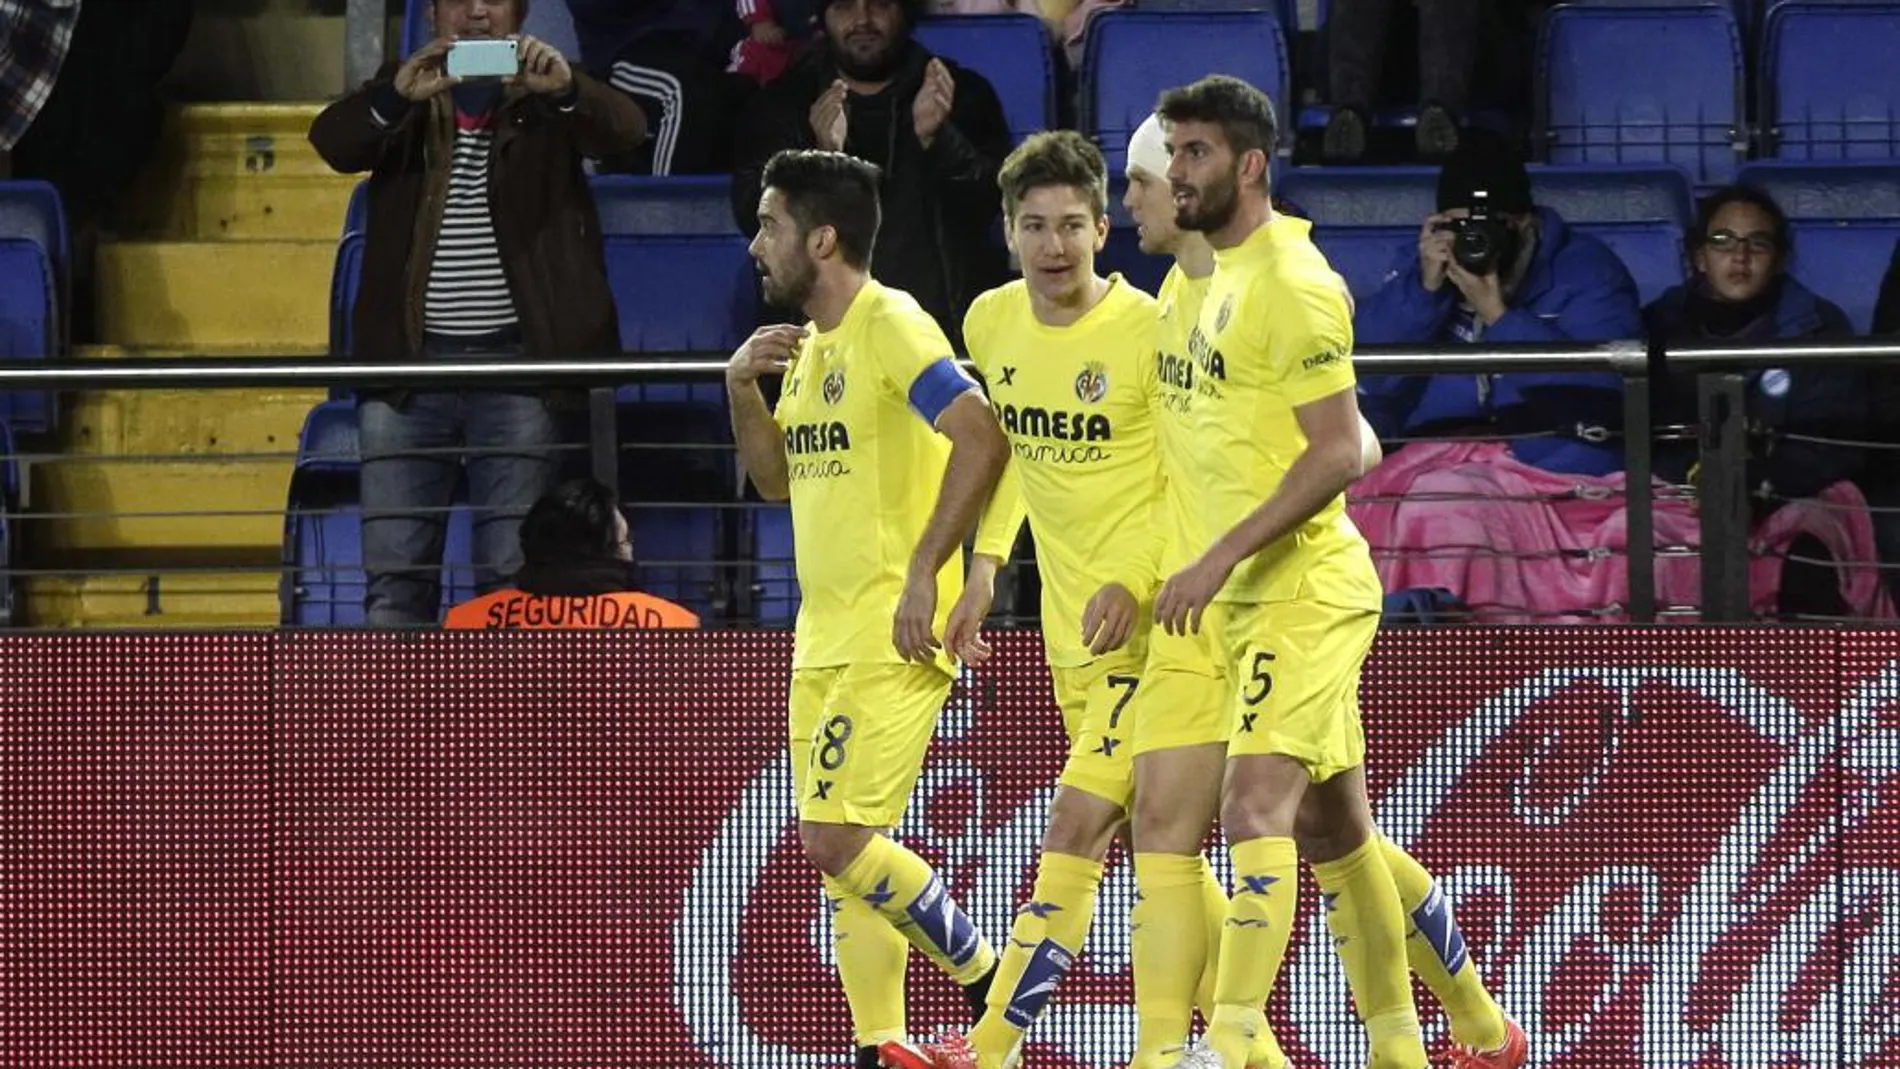 El delantero argentino del Villarreal Vietto (2-i) celebra junto a sus compañeros tras marcar ante el Eibar.